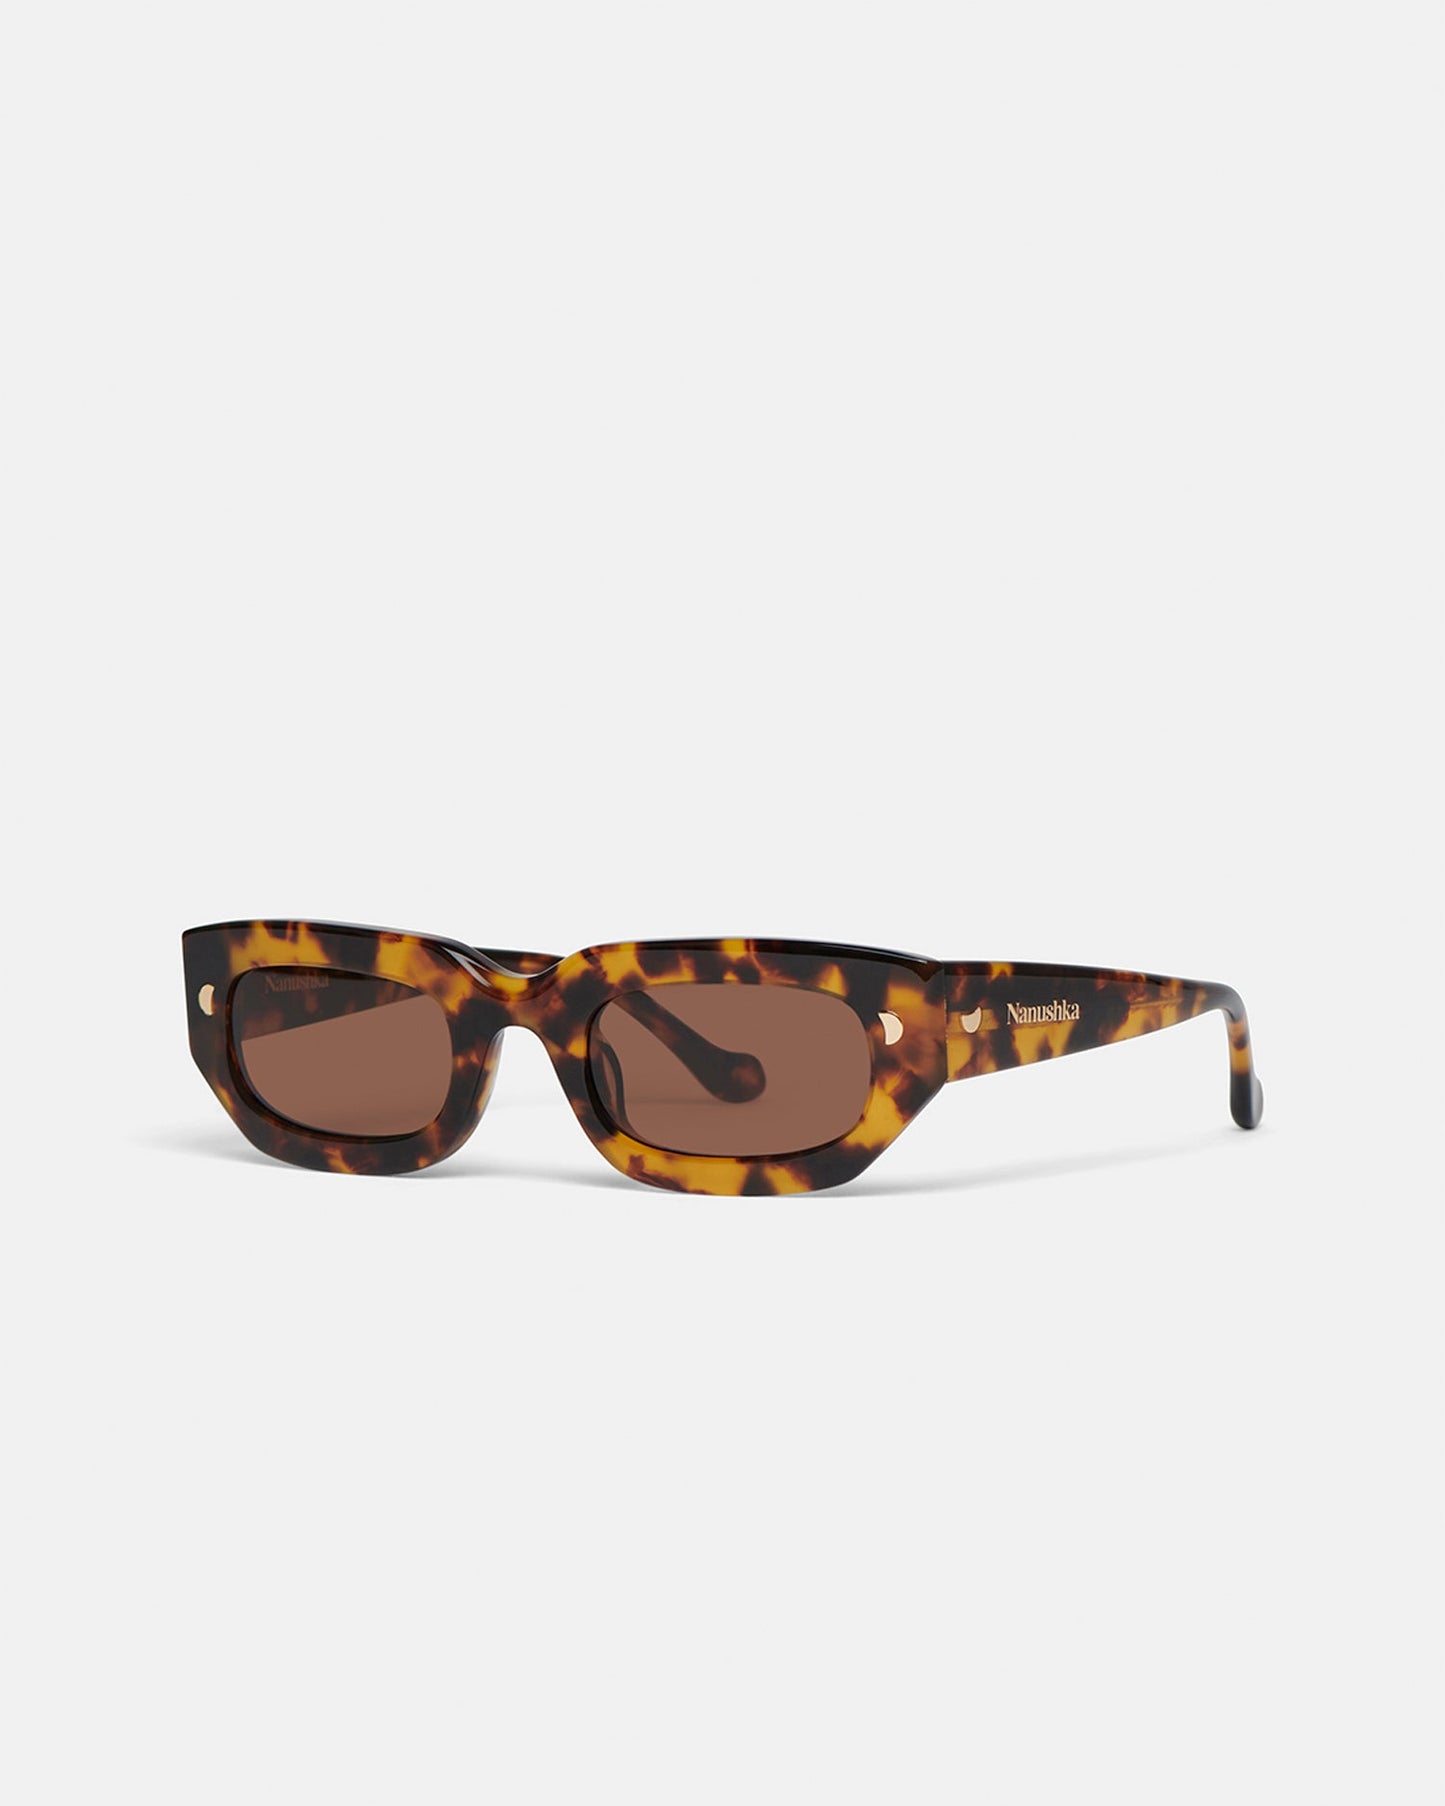 Kadee - Bio-Plastic D-Frame Sunglasses - Dark Amber